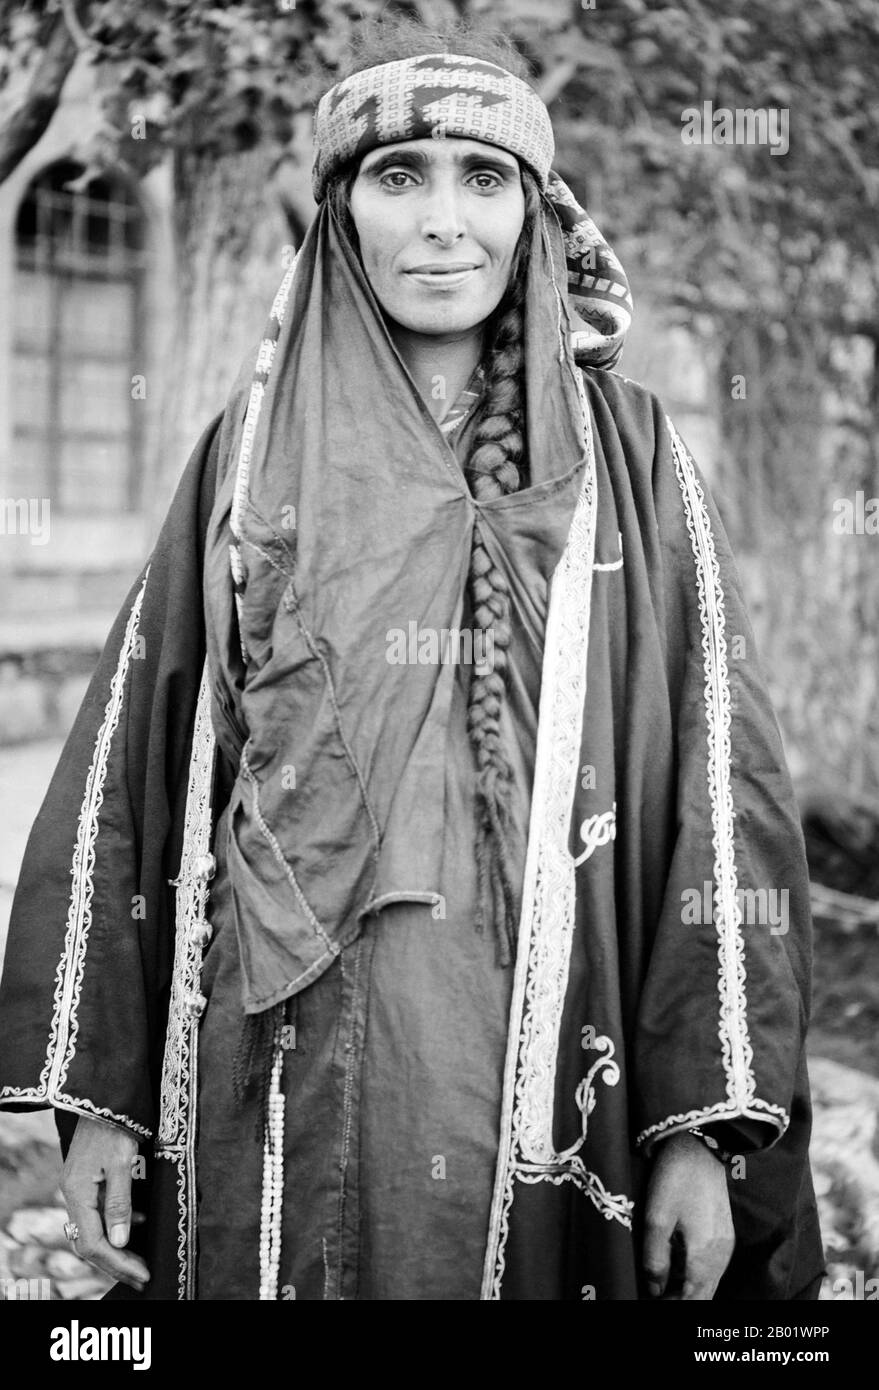 Giordania: Una donna beduina che indossa un abito ricamato, Wadi Musa, Petra, 1900 I beduini fanno parte di un gruppo etnico arabo che abita prevalentemente nel deserto tradizionalmente diviso in tribù o clan, conosciuto in arabo come ʿašāʾir. Per "beduini" si intendono "quelli di bādiyah" o "quelli del deserto". A partire dalla fine del XIX secolo, molti beduini sotto il dominio britannico iniziarono a transitare verso una vita semi-nomade. Negli anni '1950 e '1960, un gran numero di beduini in tutto il Midwest Asia iniziò a lasciare la tradizionale vita nomade per stabilirsi nelle città. Foto Stock